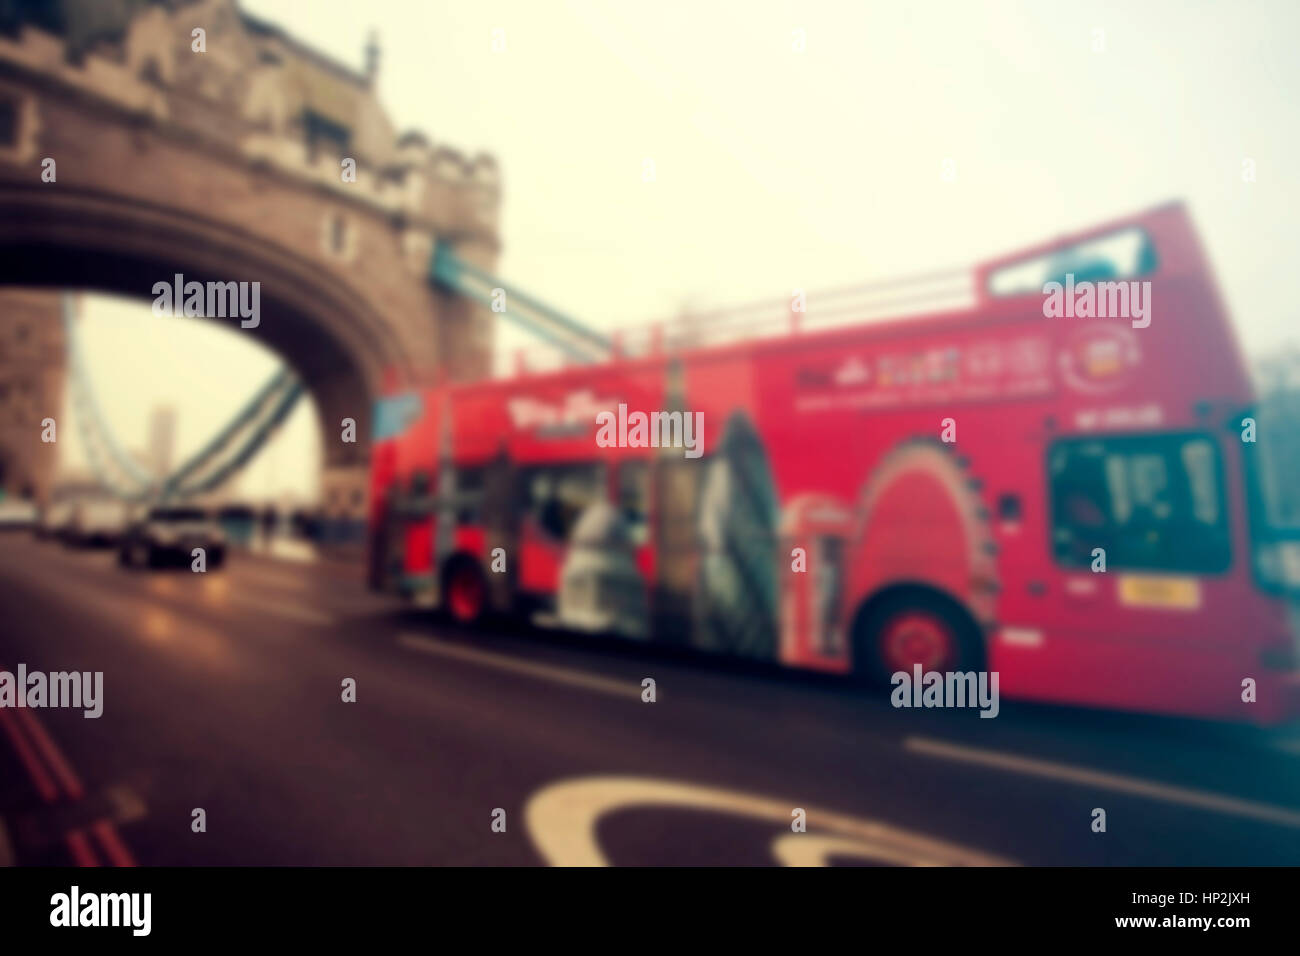 Tower Bridge mit roten Bus in London, England - unscharf gestellt Vintage-Hintergrund Stockfoto